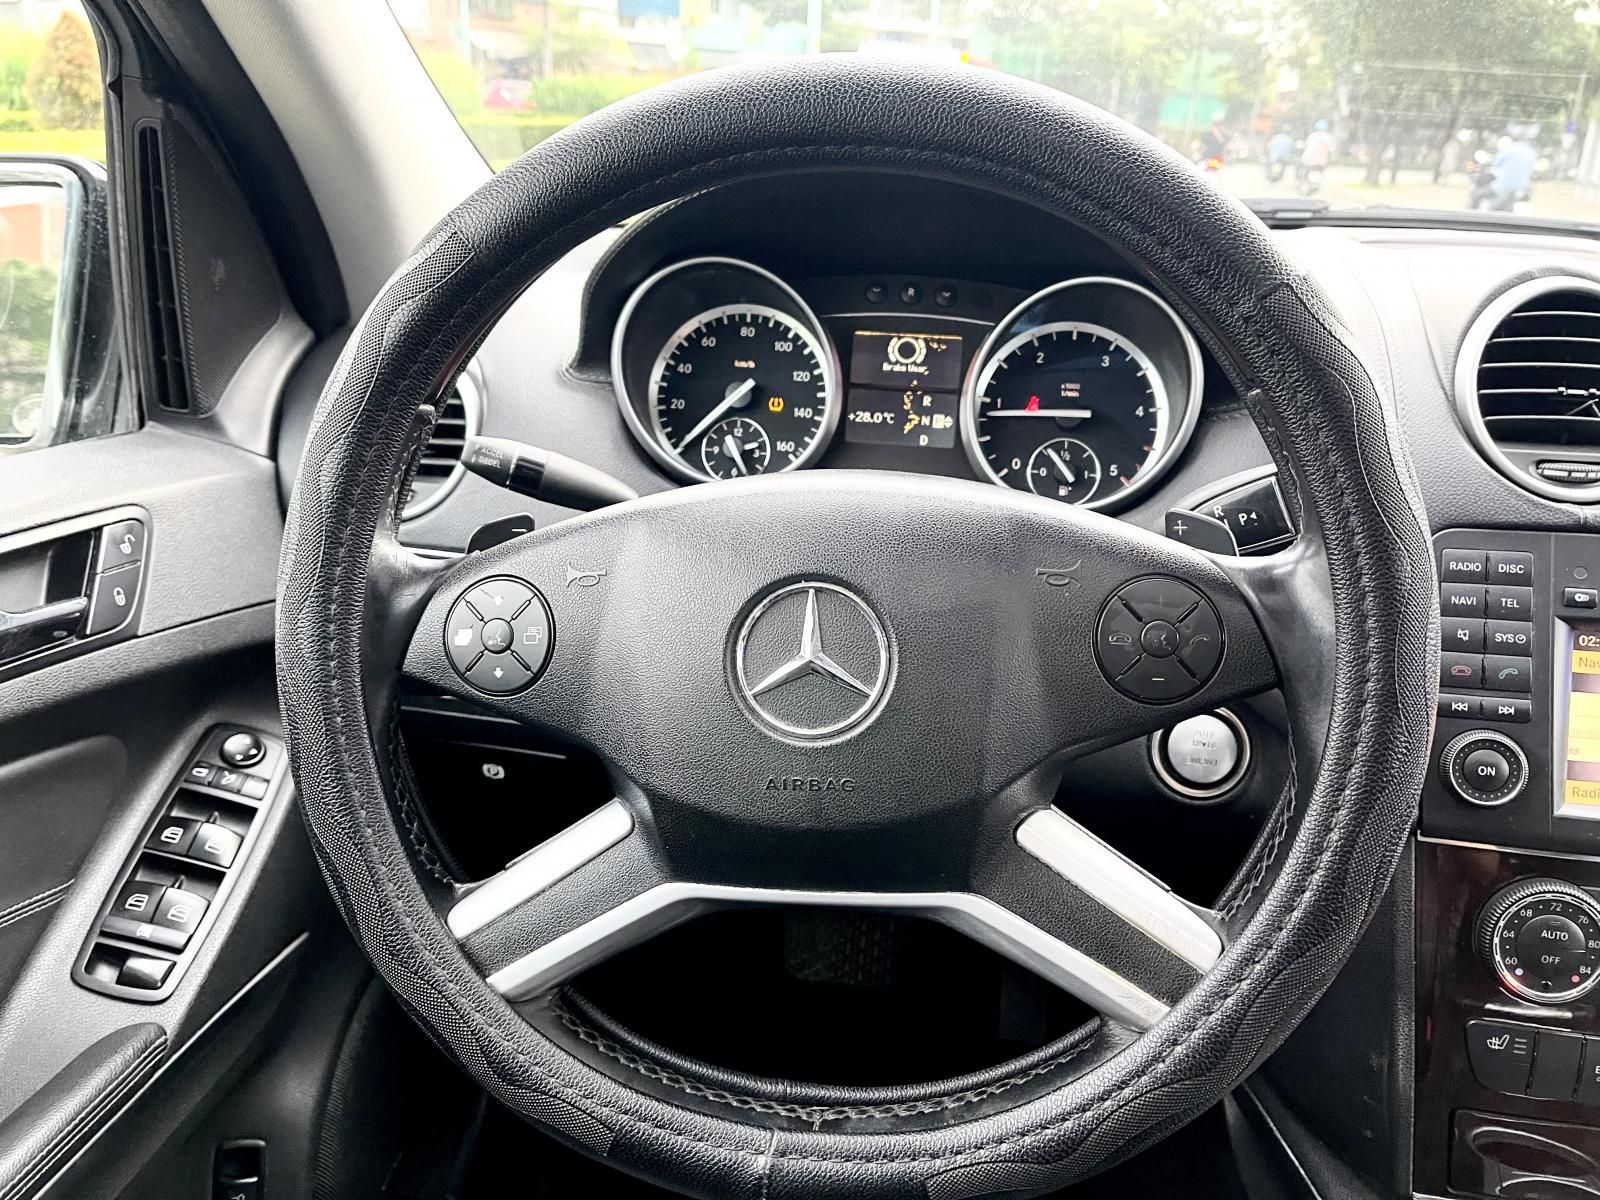 Mercedes-Benz GL 350 2010 - CDI máy dầu nhập Mỹ, biển số đẹp 51H. 54554 gầm cao, bản cao cấp nhất đủ đồ